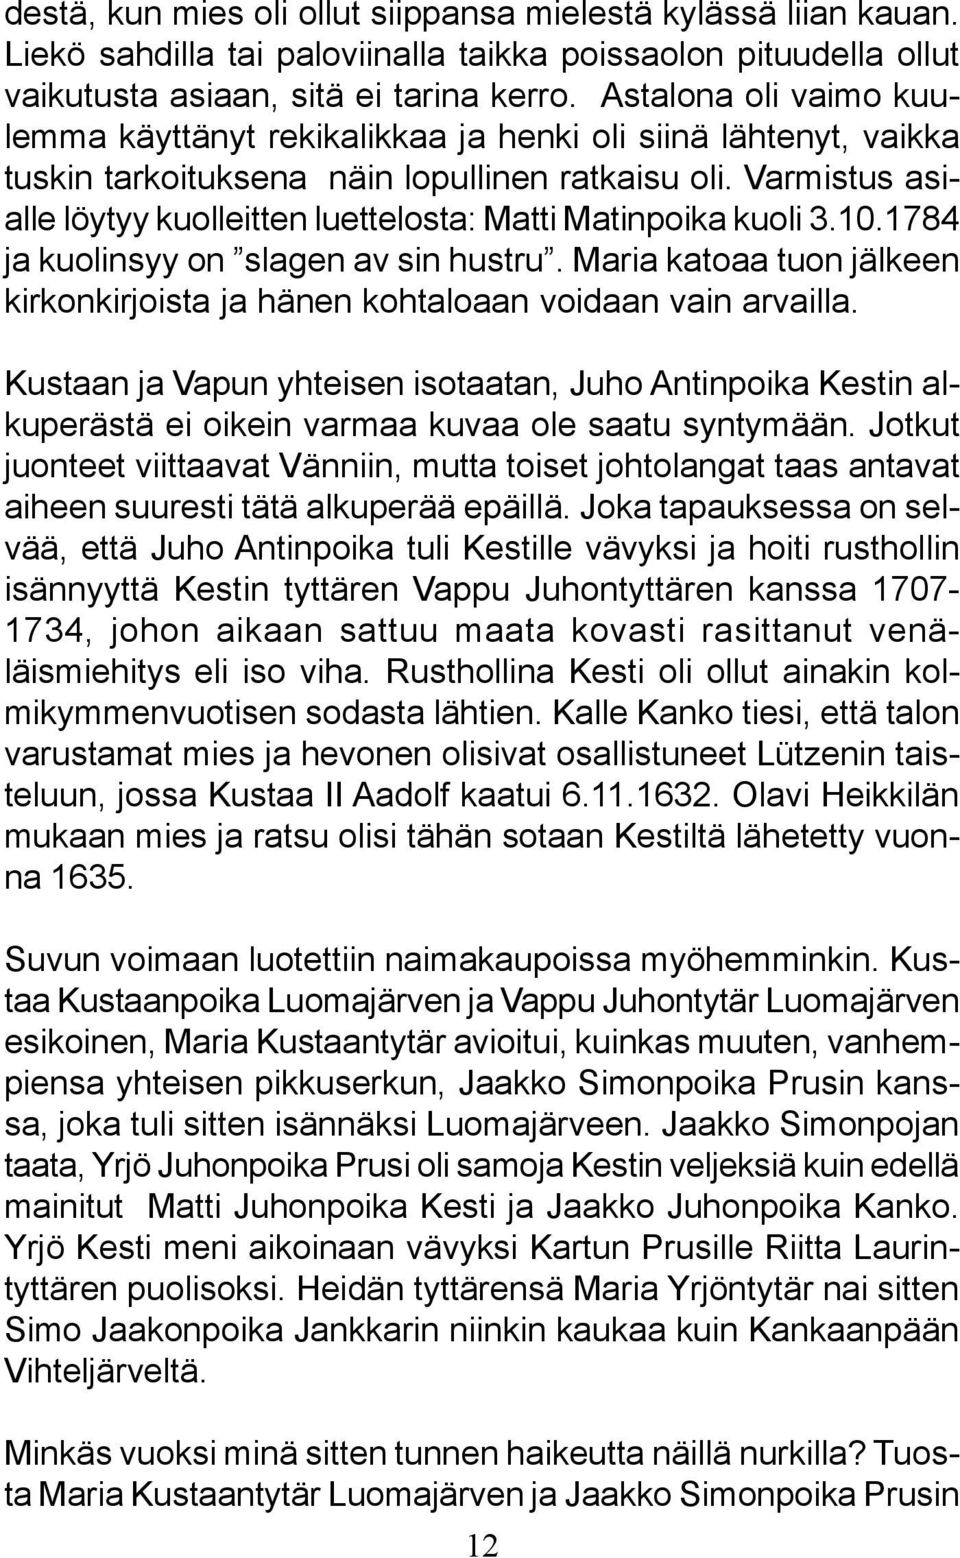 Varmistus asialle löytyy kuolleitten luettelosta: Matti Matinpoika kuoli 3.10.1784 ja kuolinsyy on slagen av sin hustru.